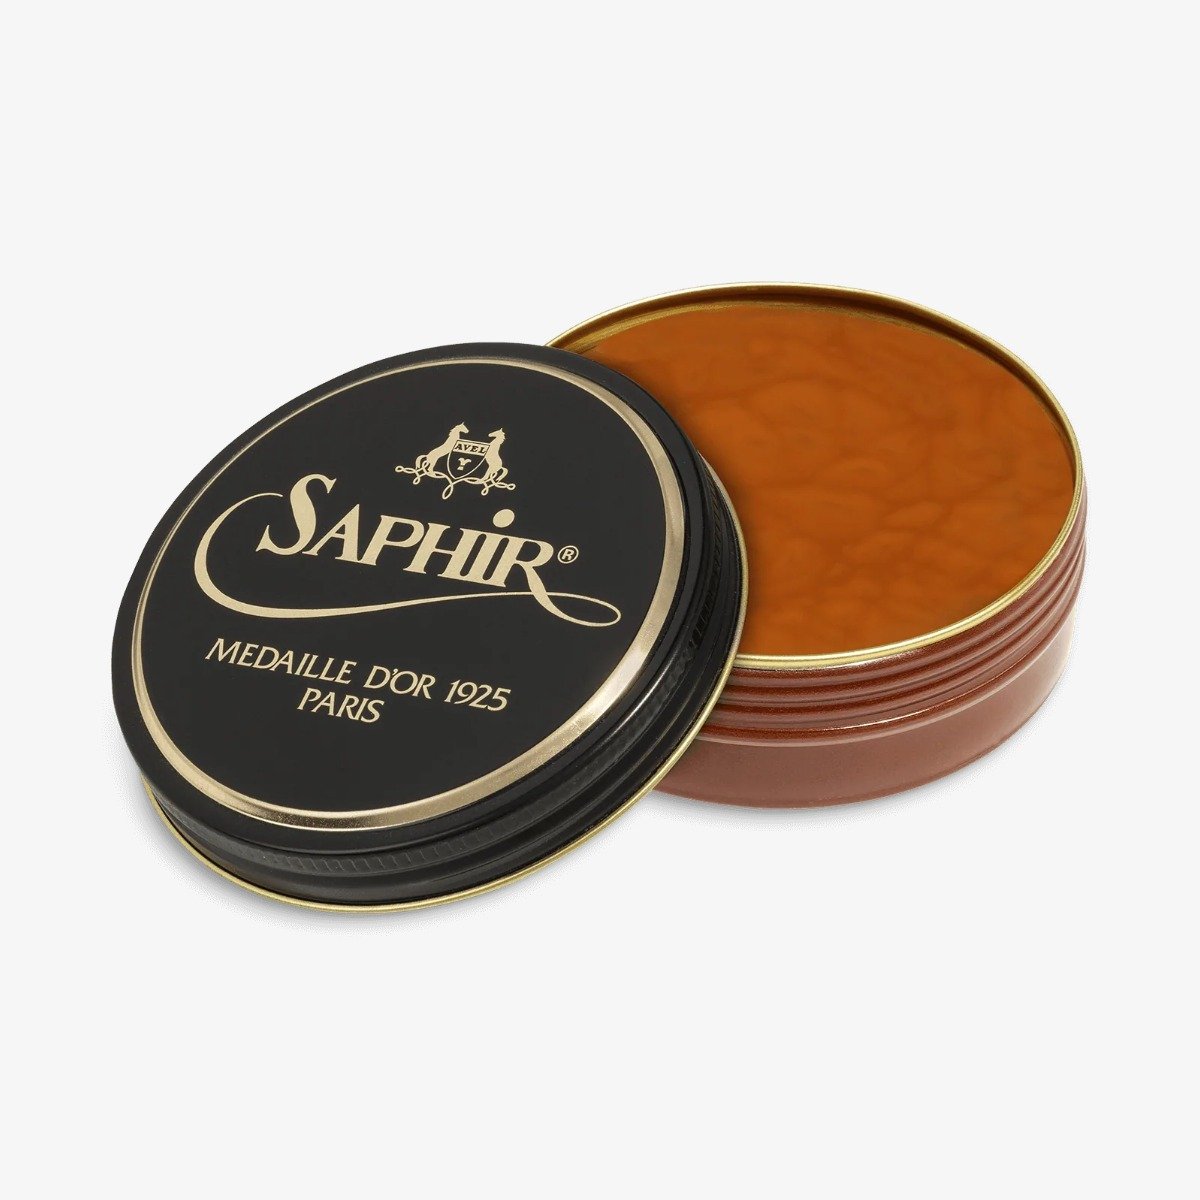 Saphir Pâte De Luxe light brown wax polish